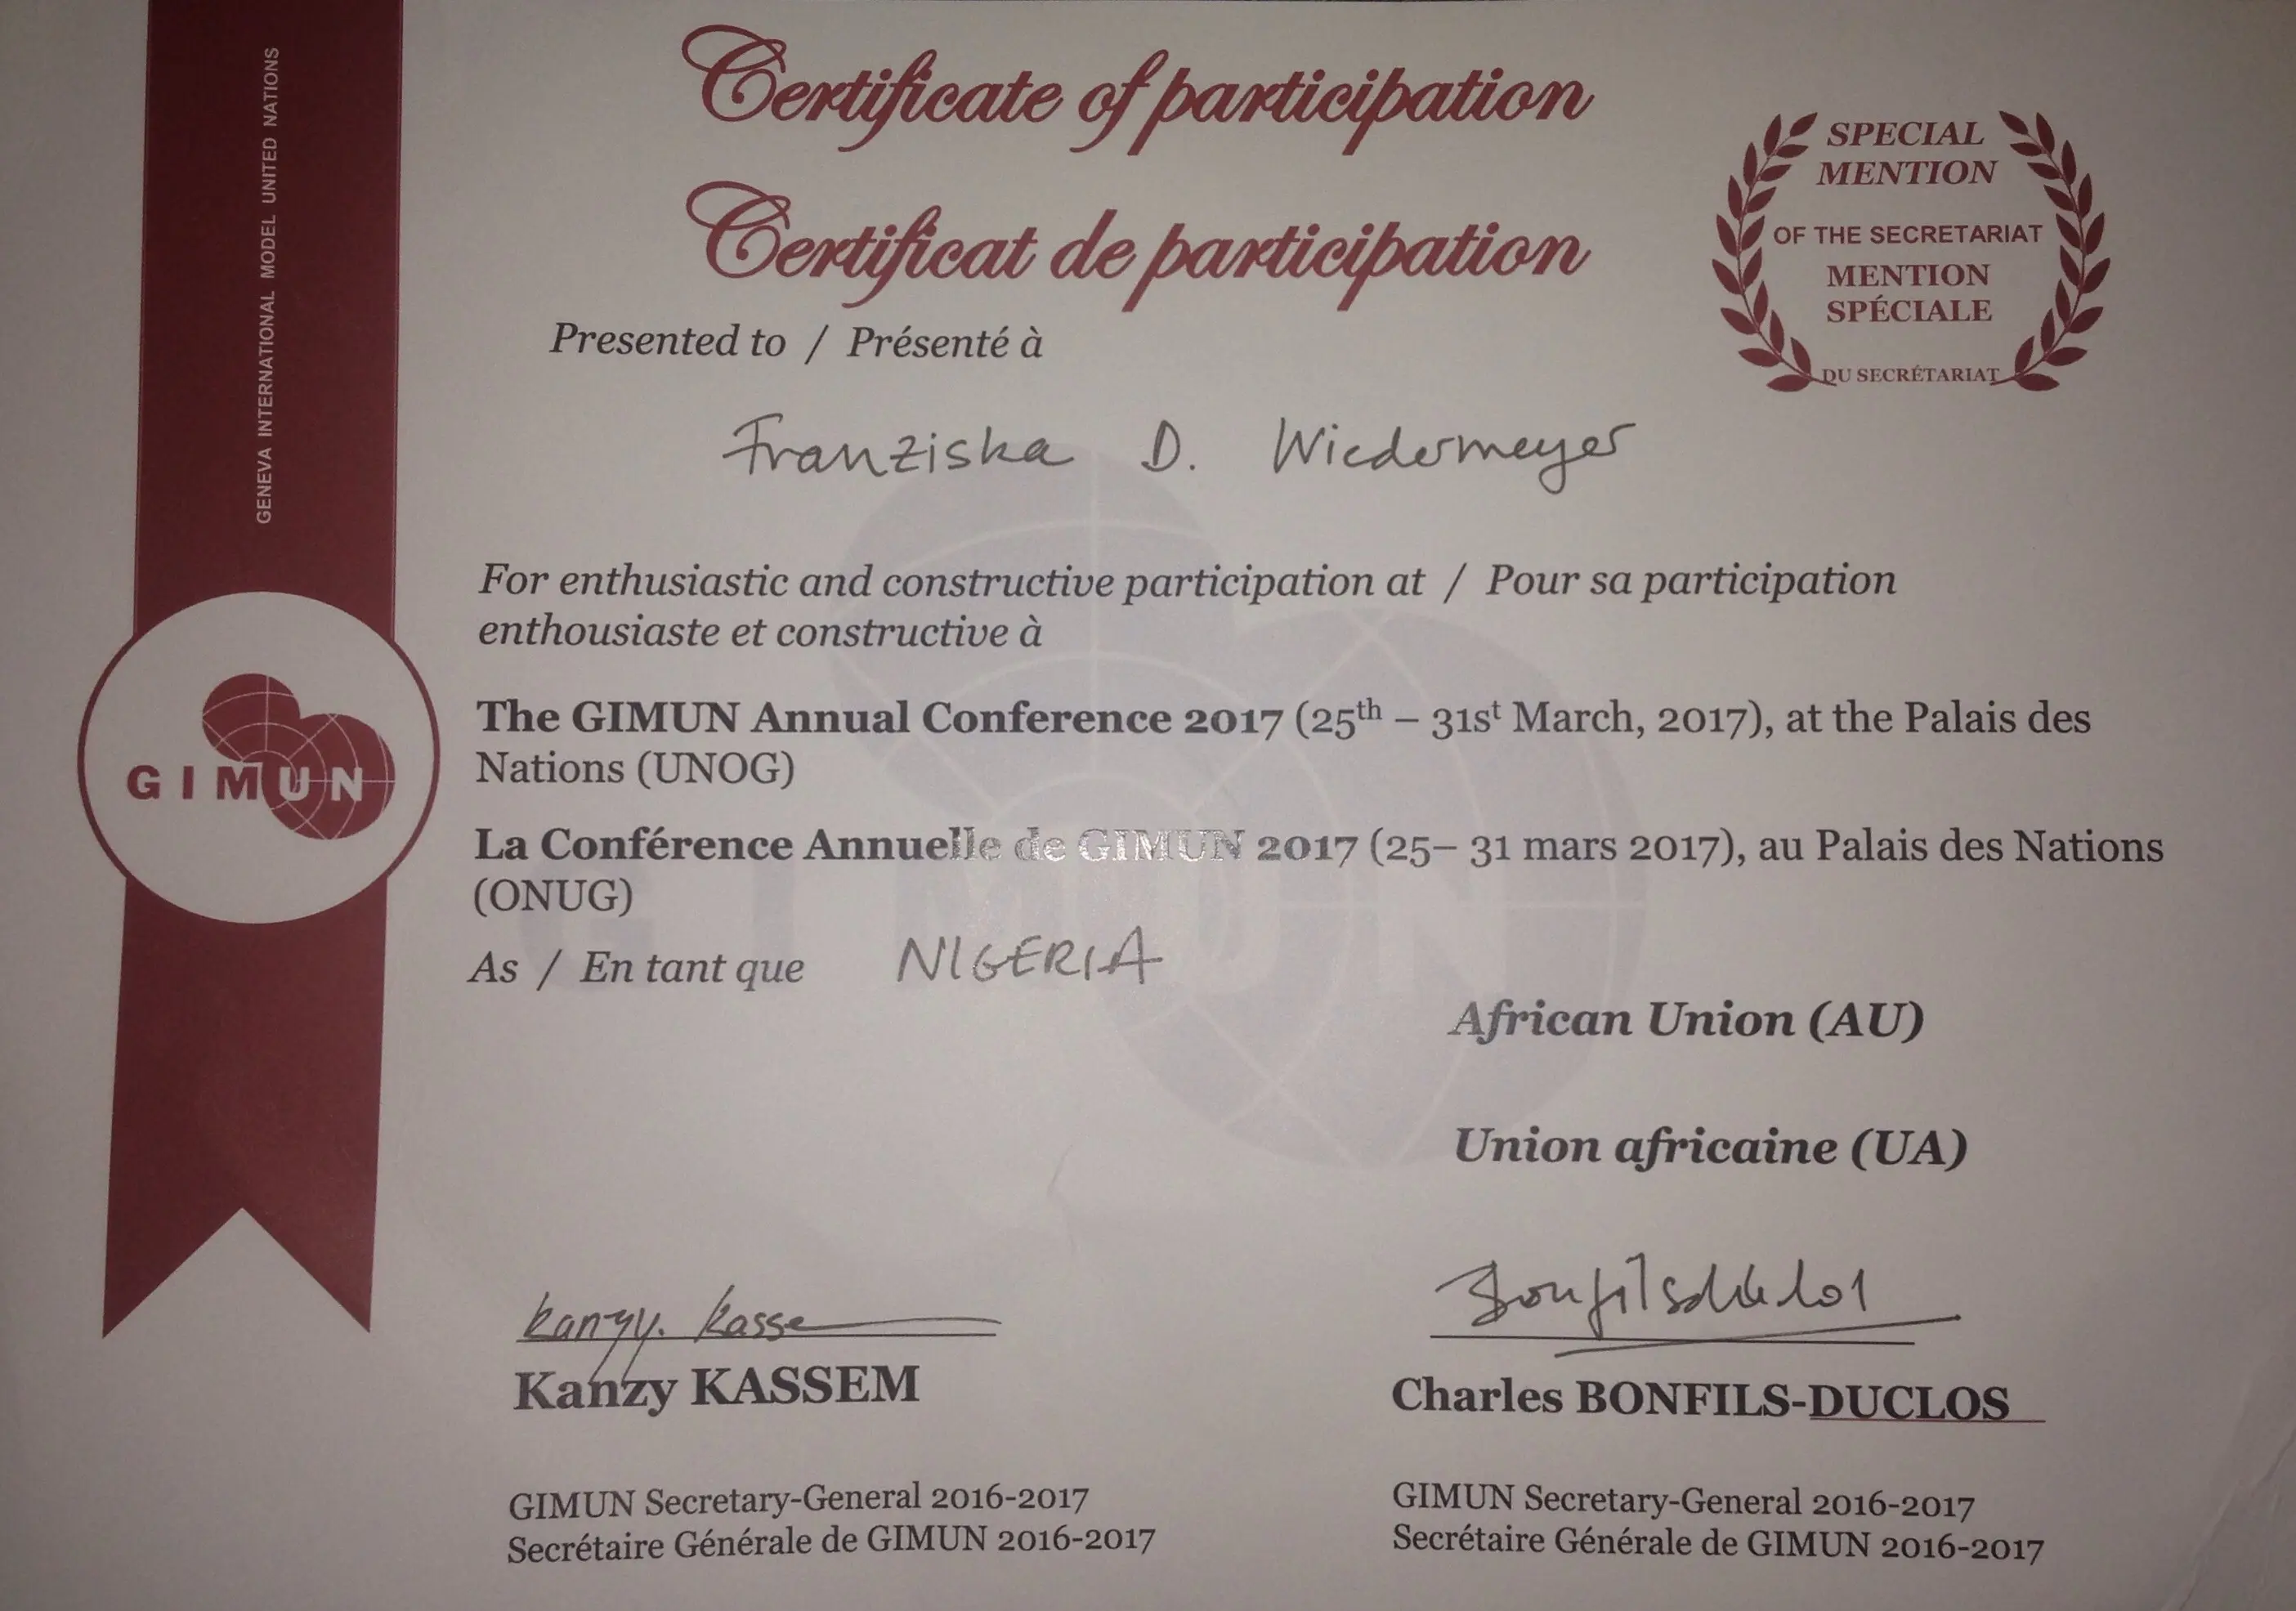 Certificate of participation Franziska D. Wiedermeyer